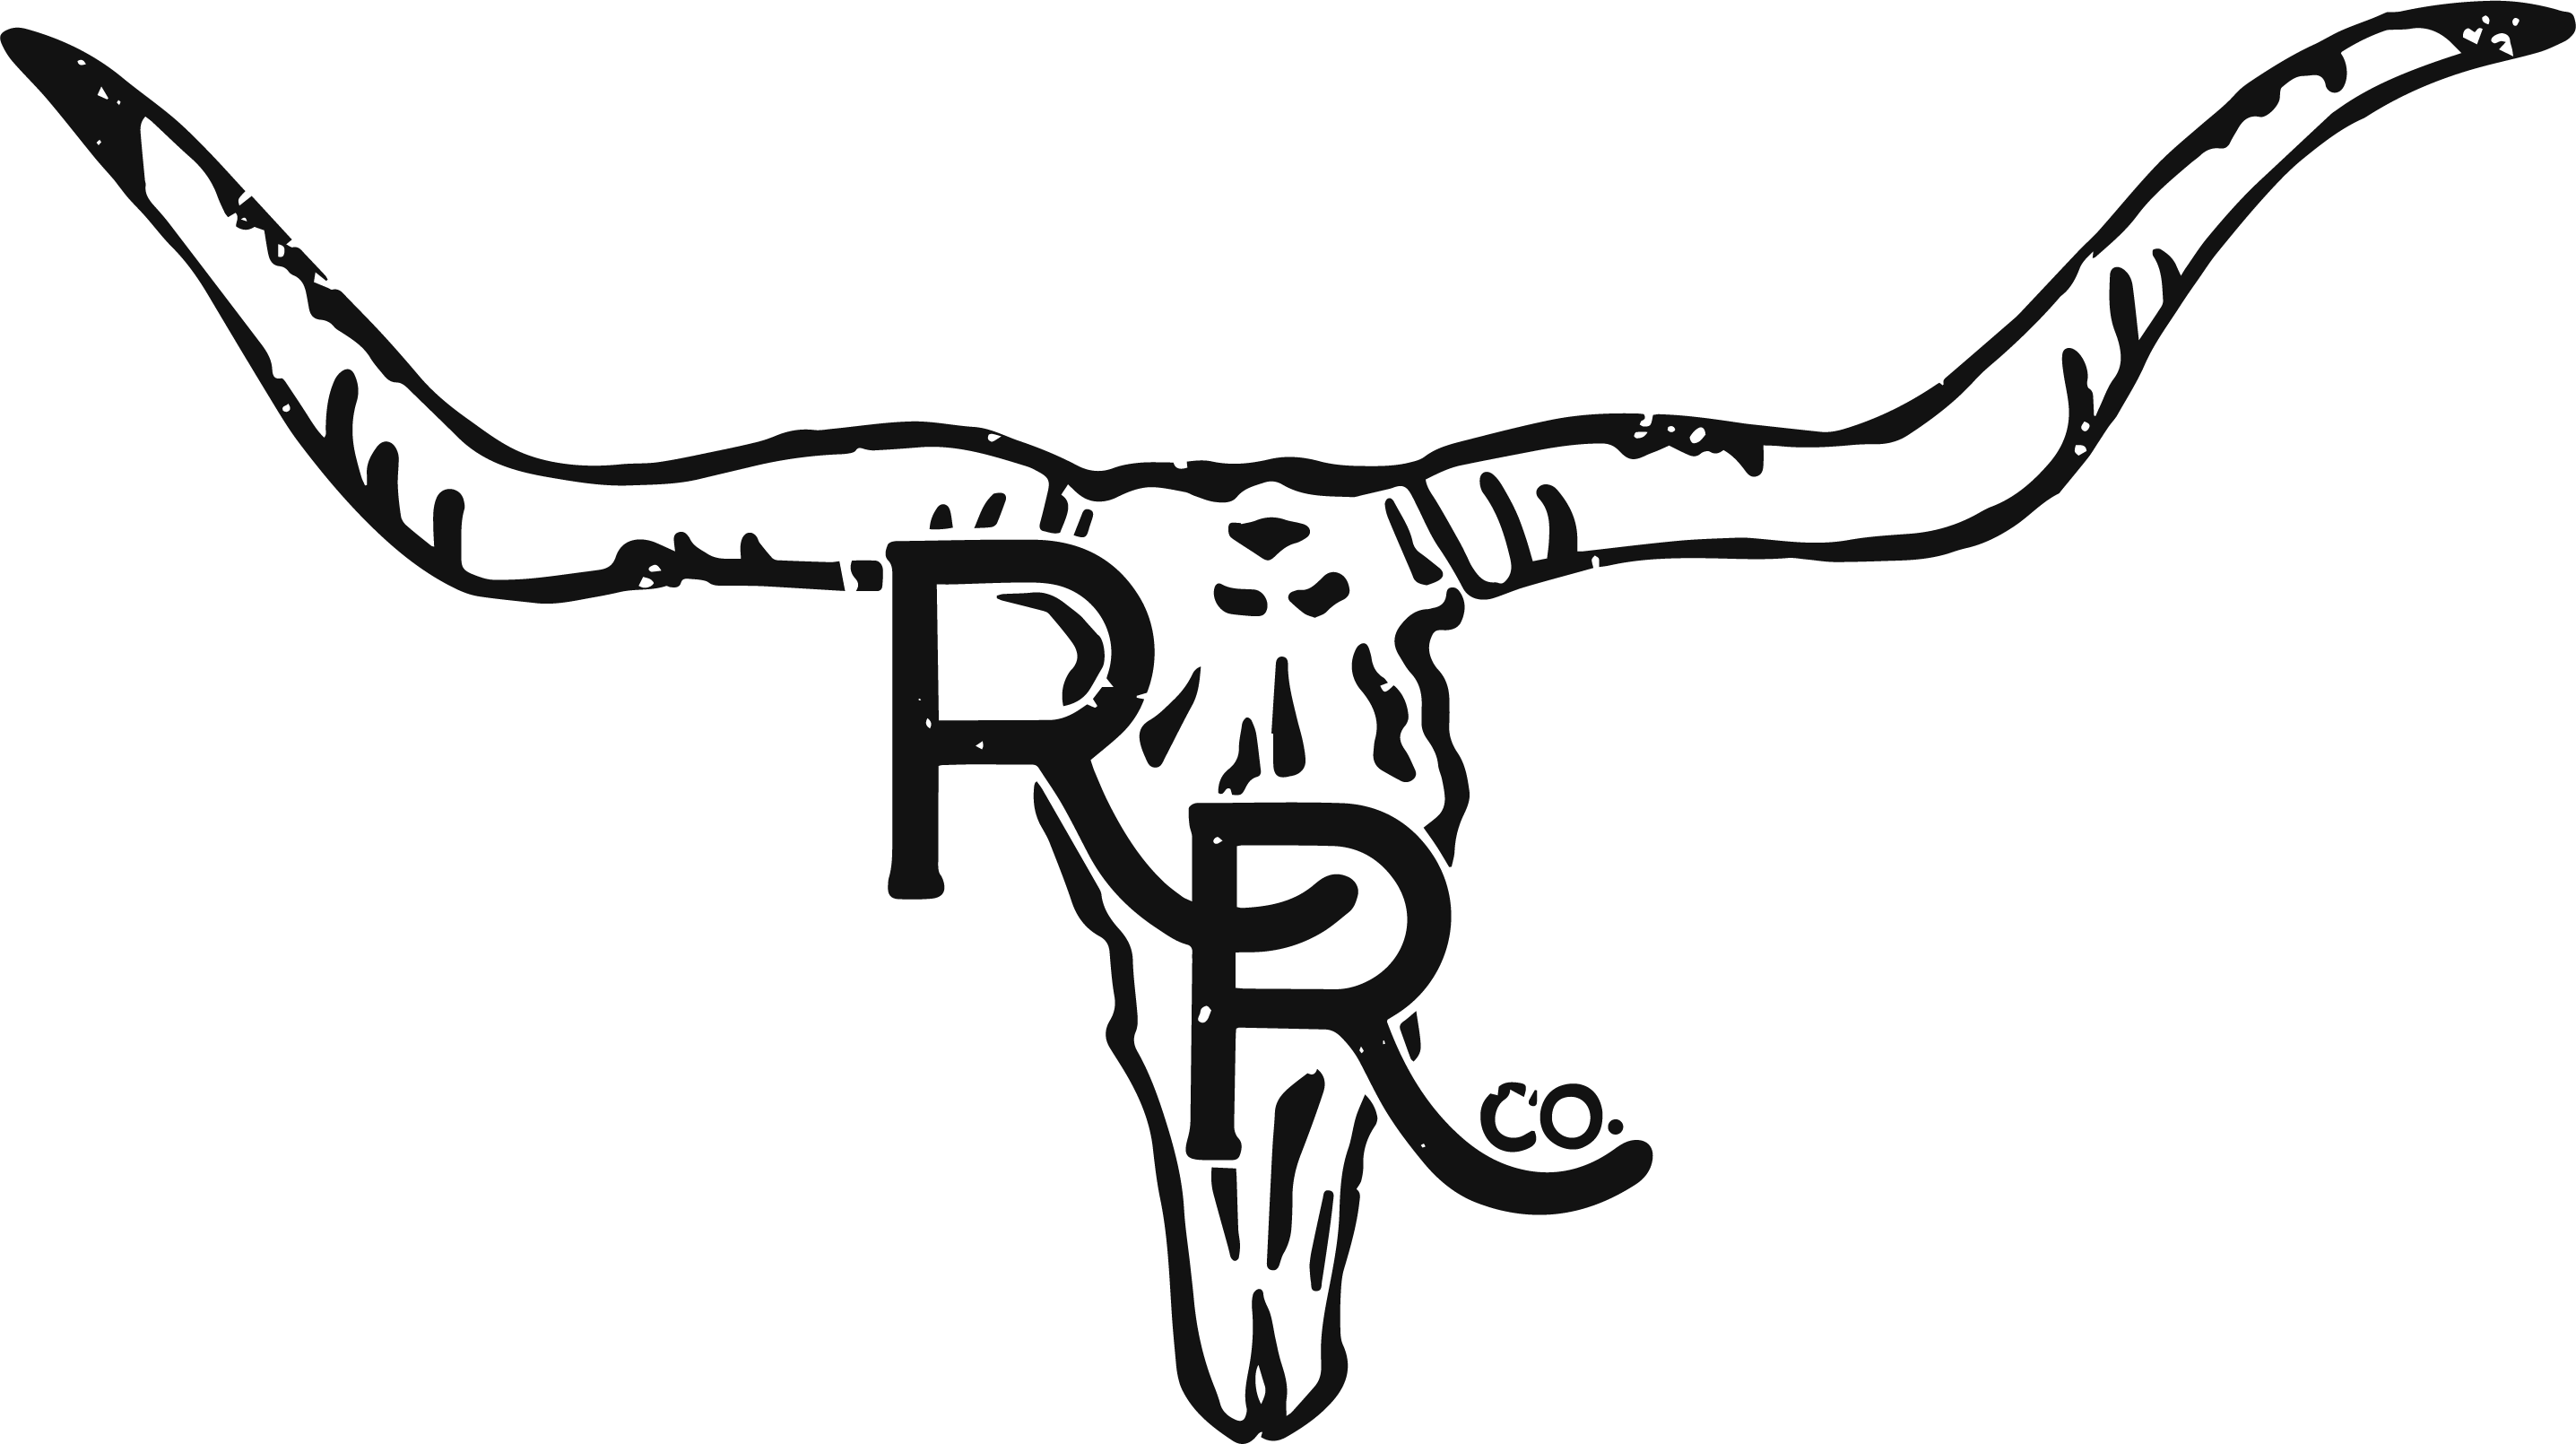 Roan Ranch Co.